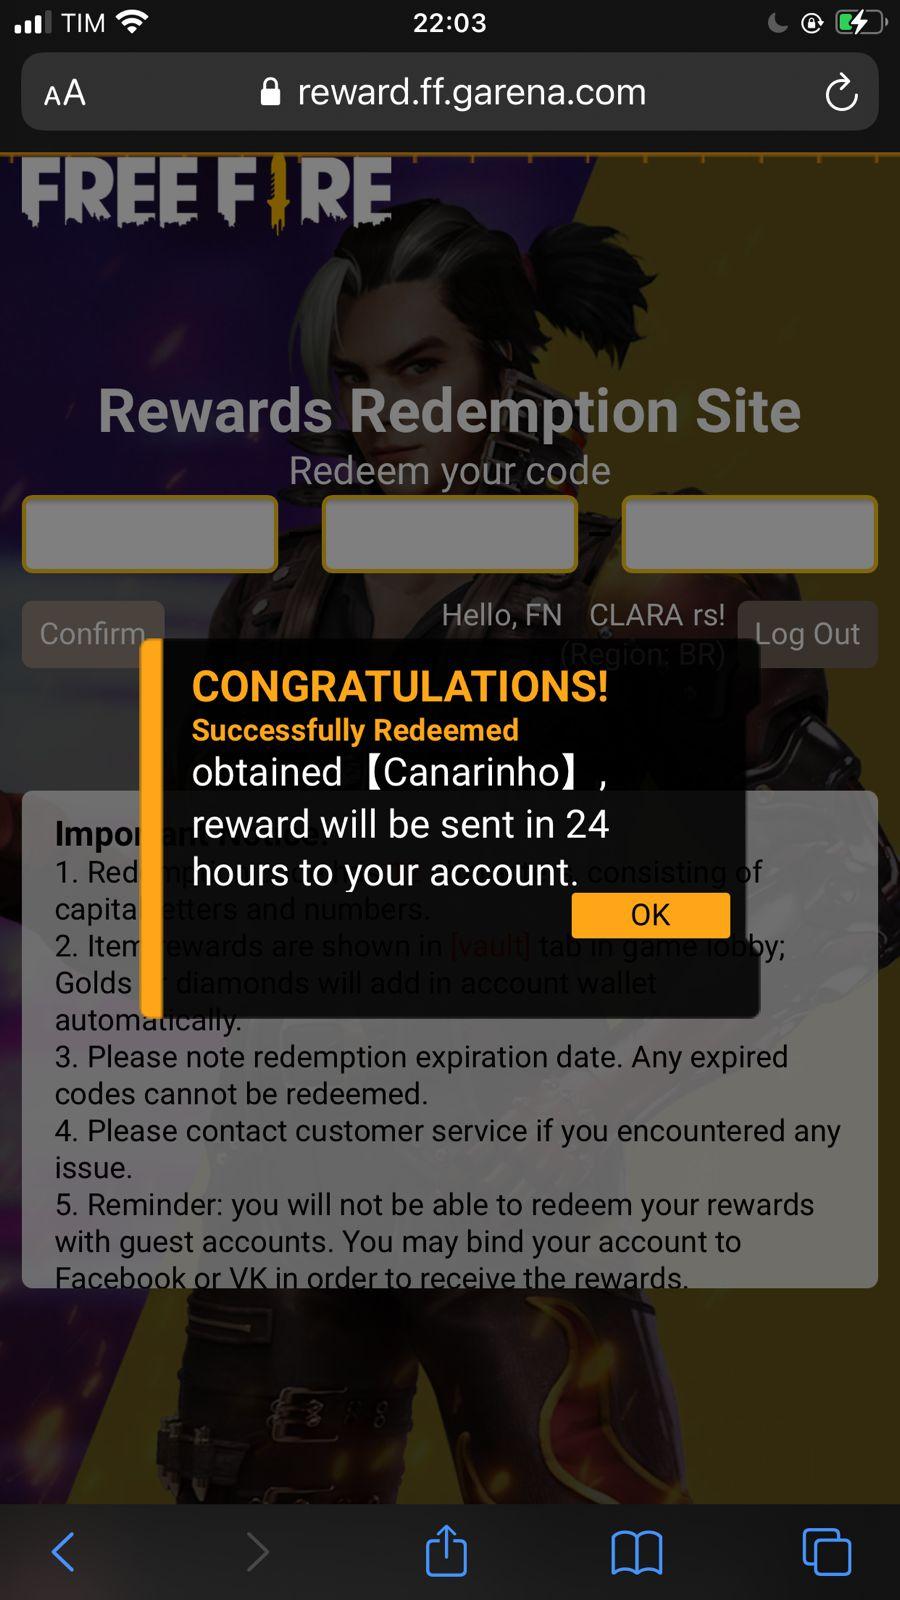 O Rewards Redemption FF ou rewardff é o site de codiguin da Garena